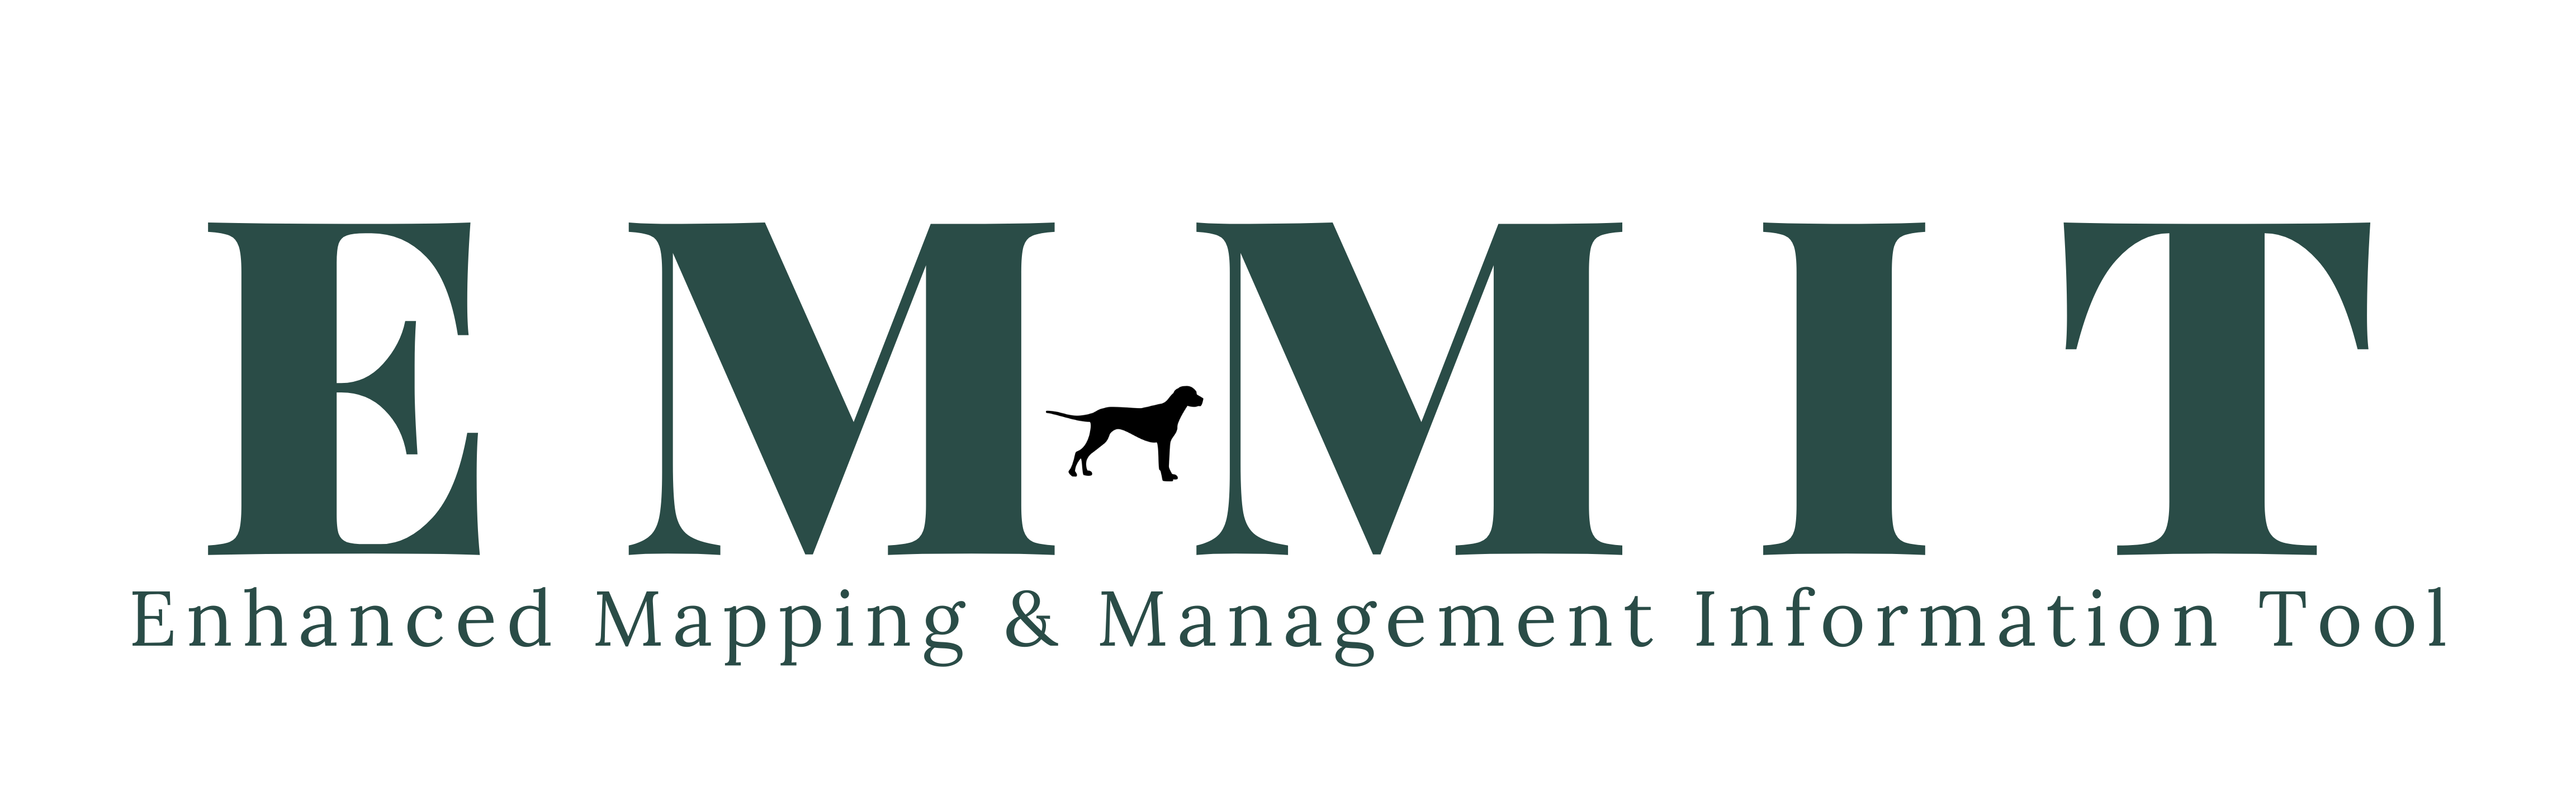 EMMIT Logo